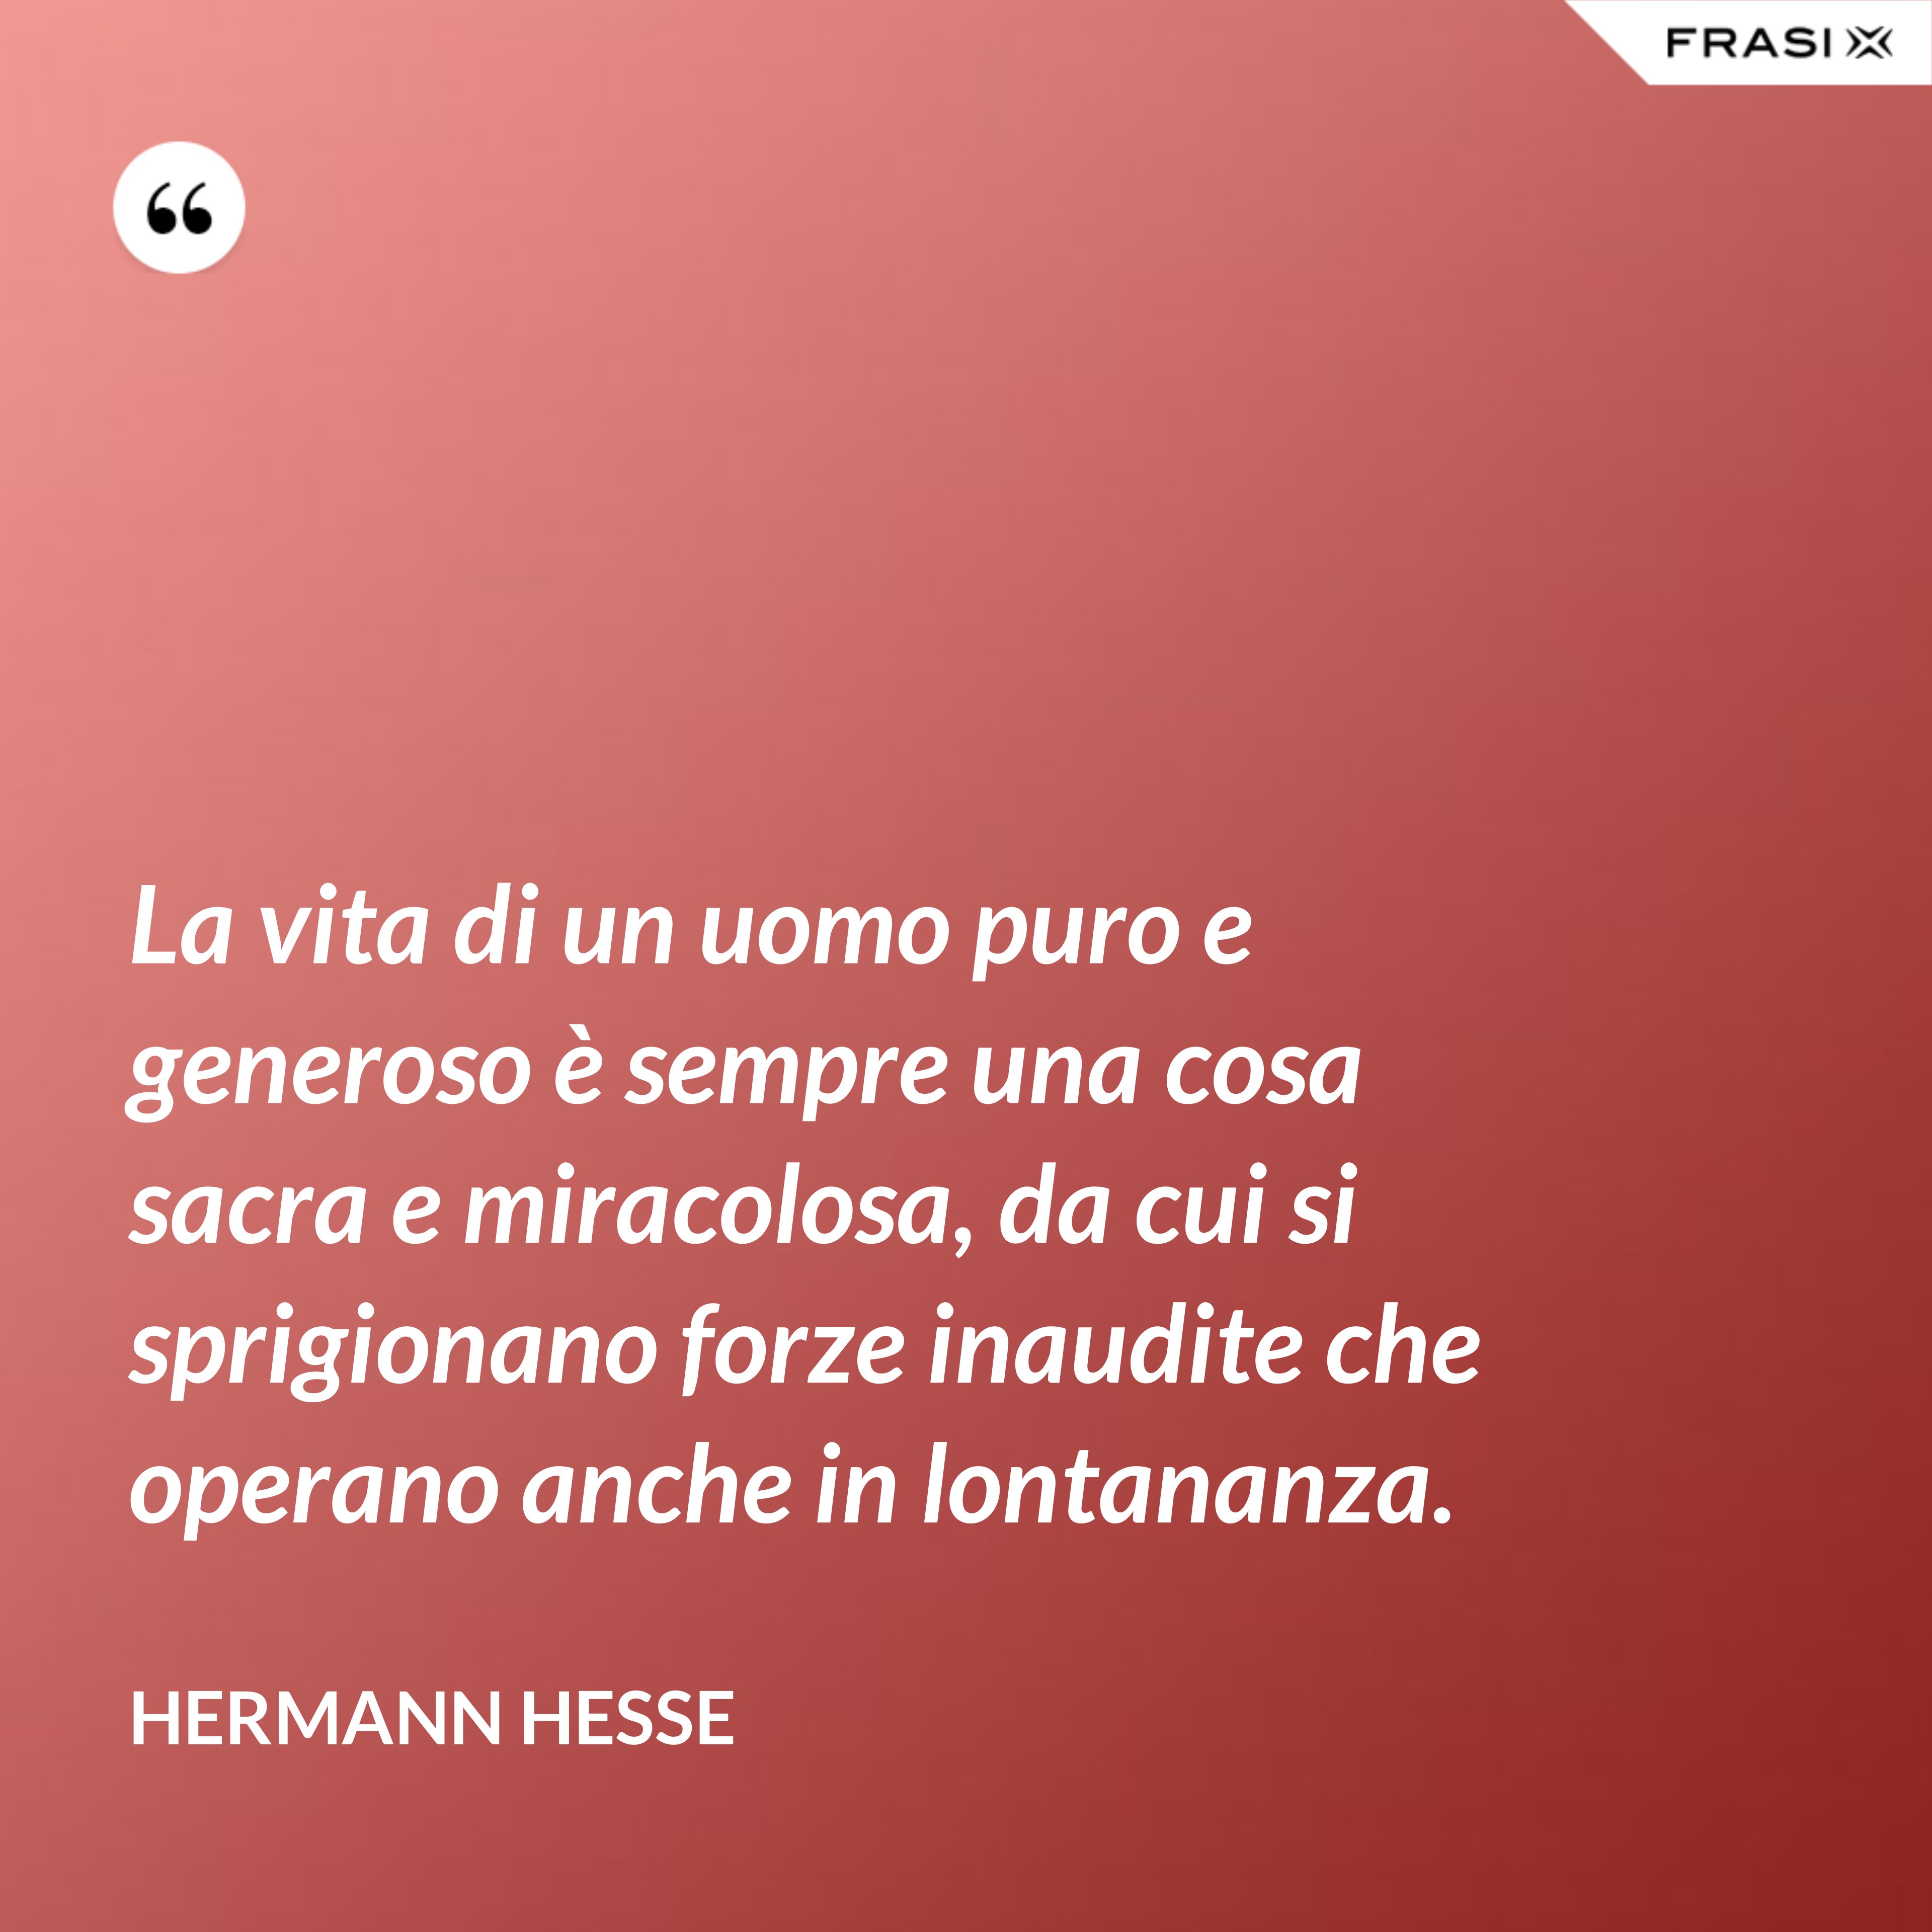 La vita di un uomo puro e generoso è sempre una cosa sacra e miracolosa, da cui si sprigionano forze inaudite che operano anche in lontananza. - Hermann Hesse